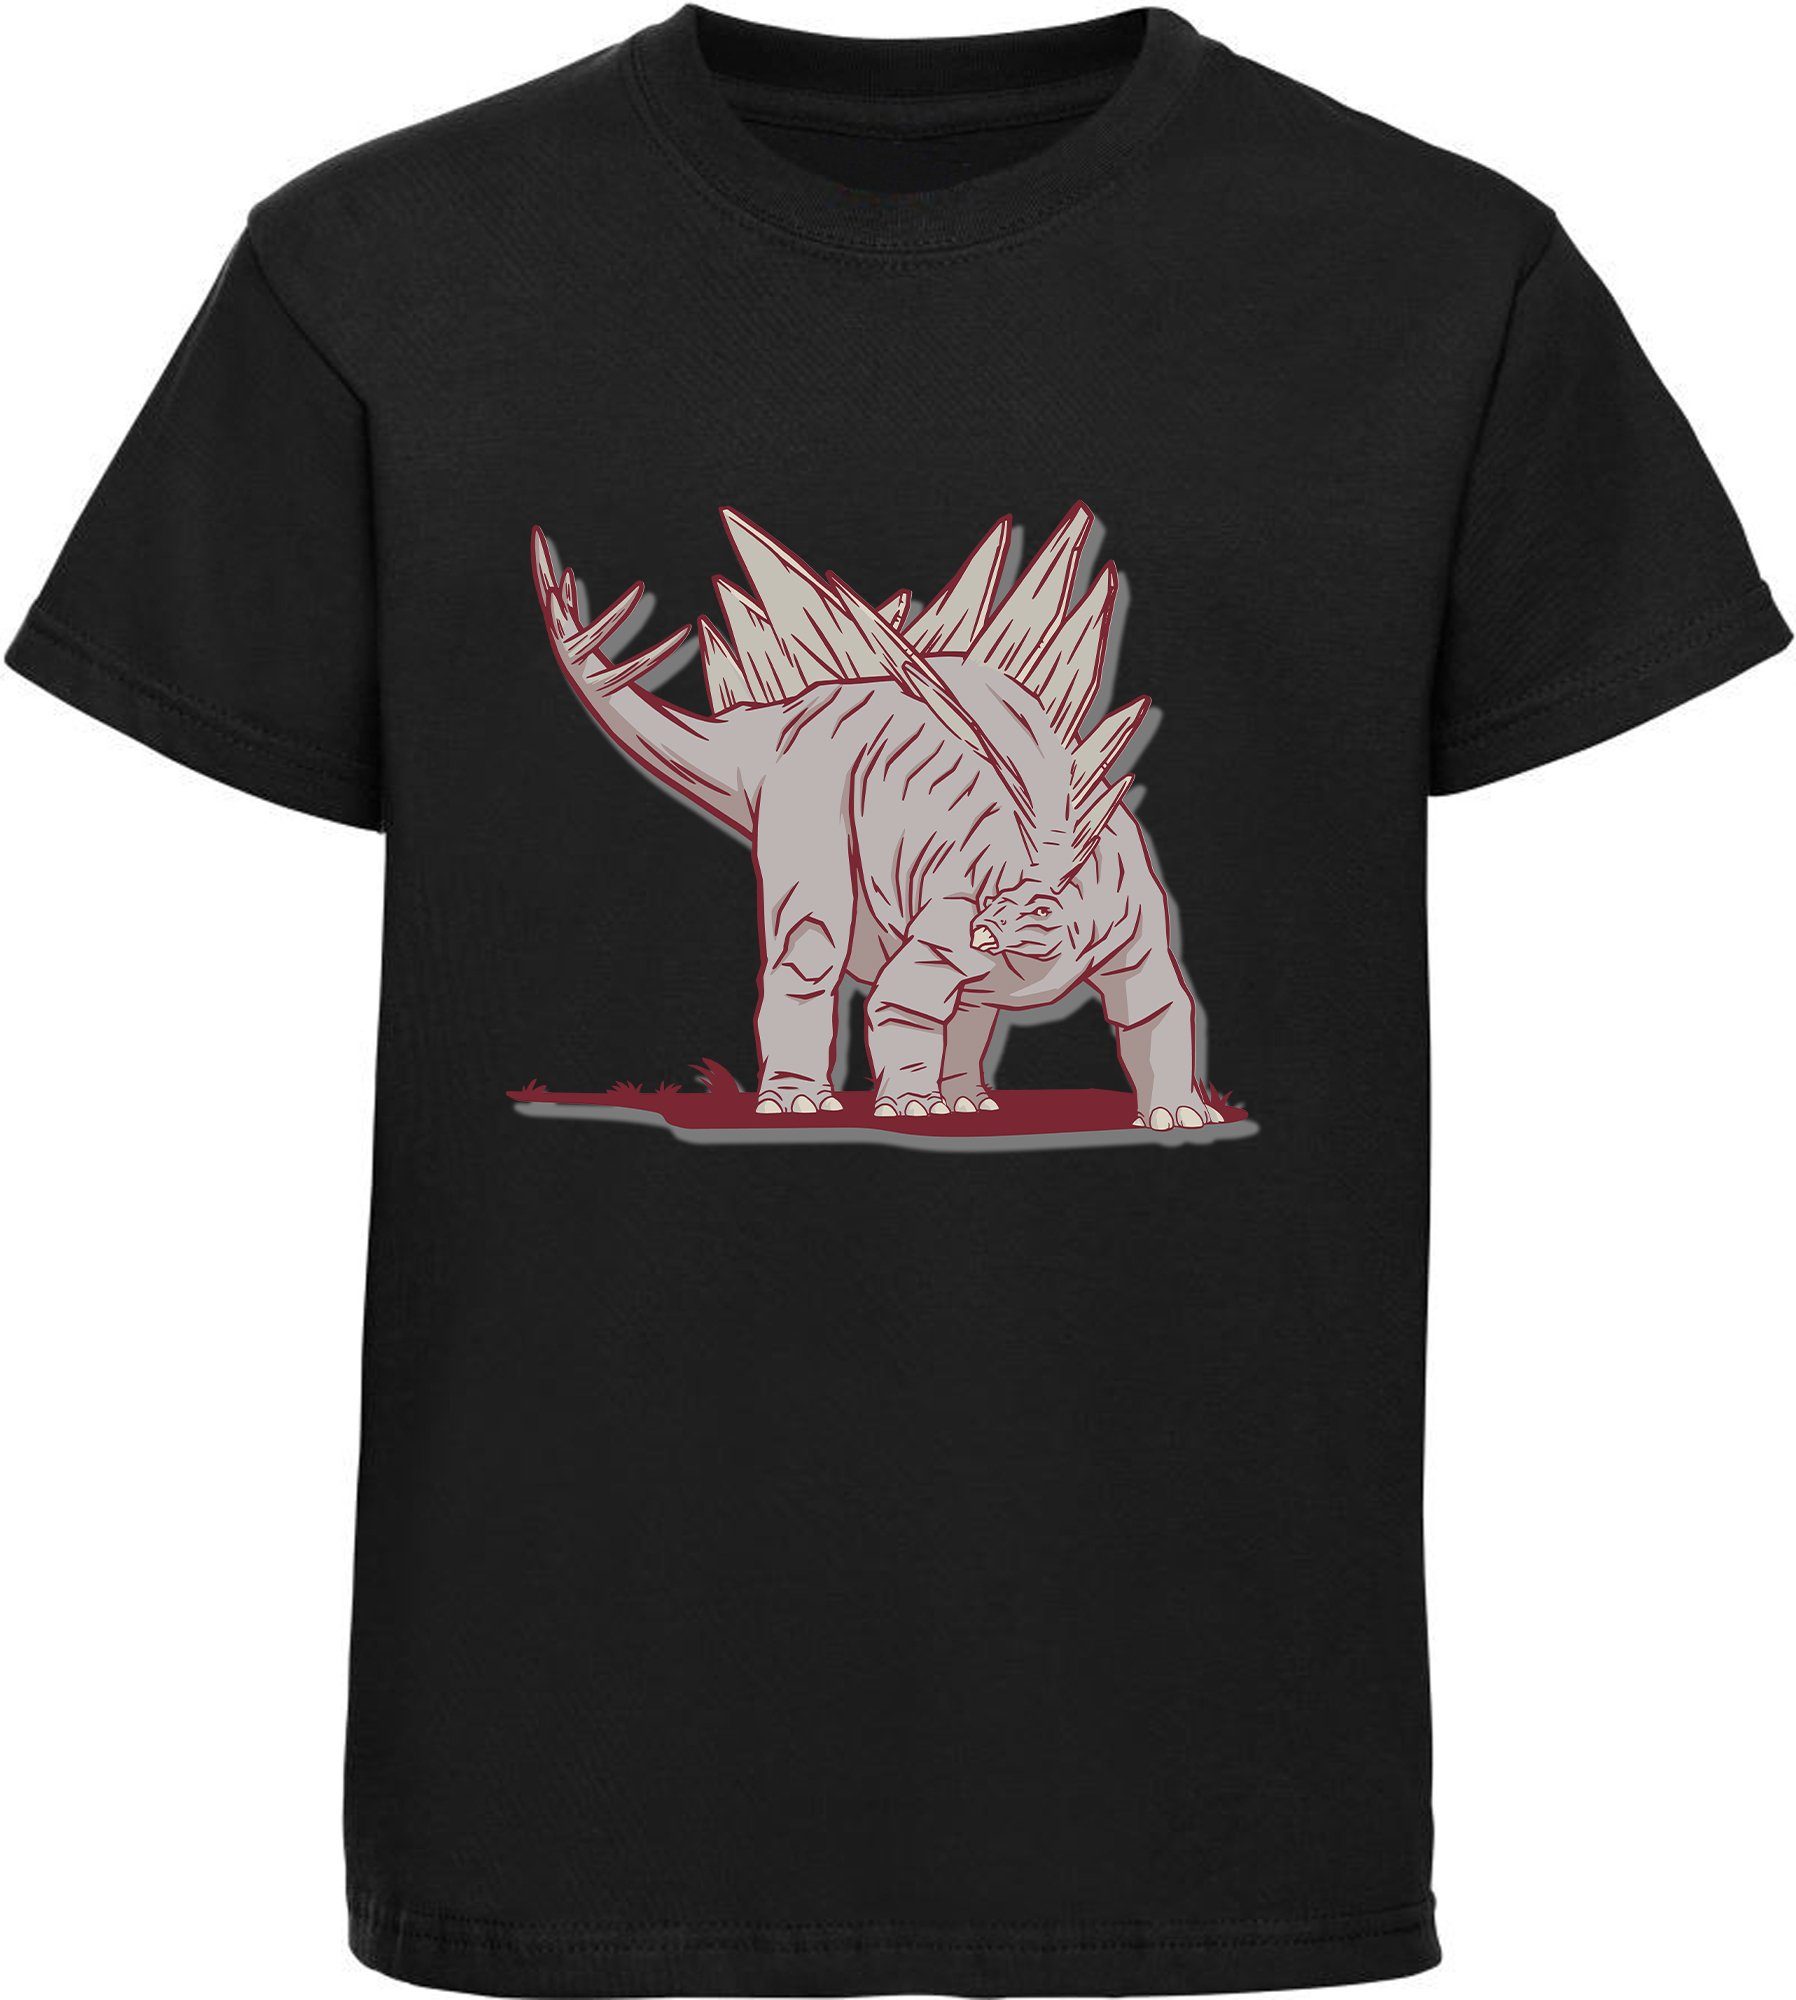 MyDesign24 Print-Shirt bedrucktes Kinder T-Shirt mit Stegosaurus Baumwollshirt mit Dino, schwarz, weiß, rot, blau, i88